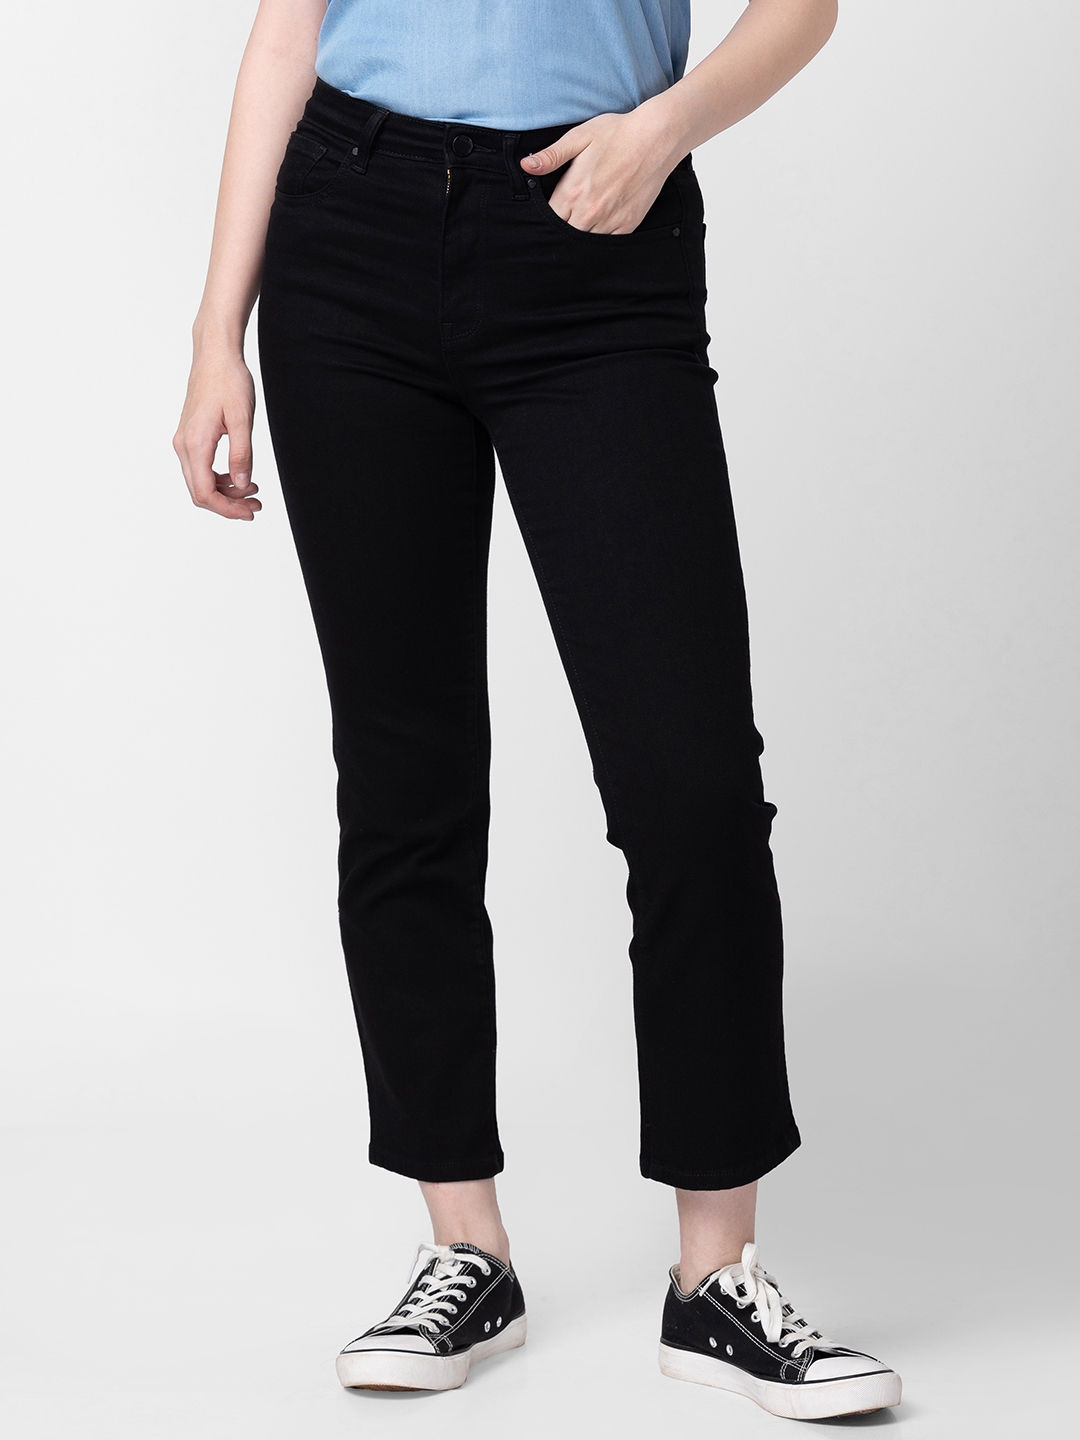 Women's Black Cotton Solid Jeans